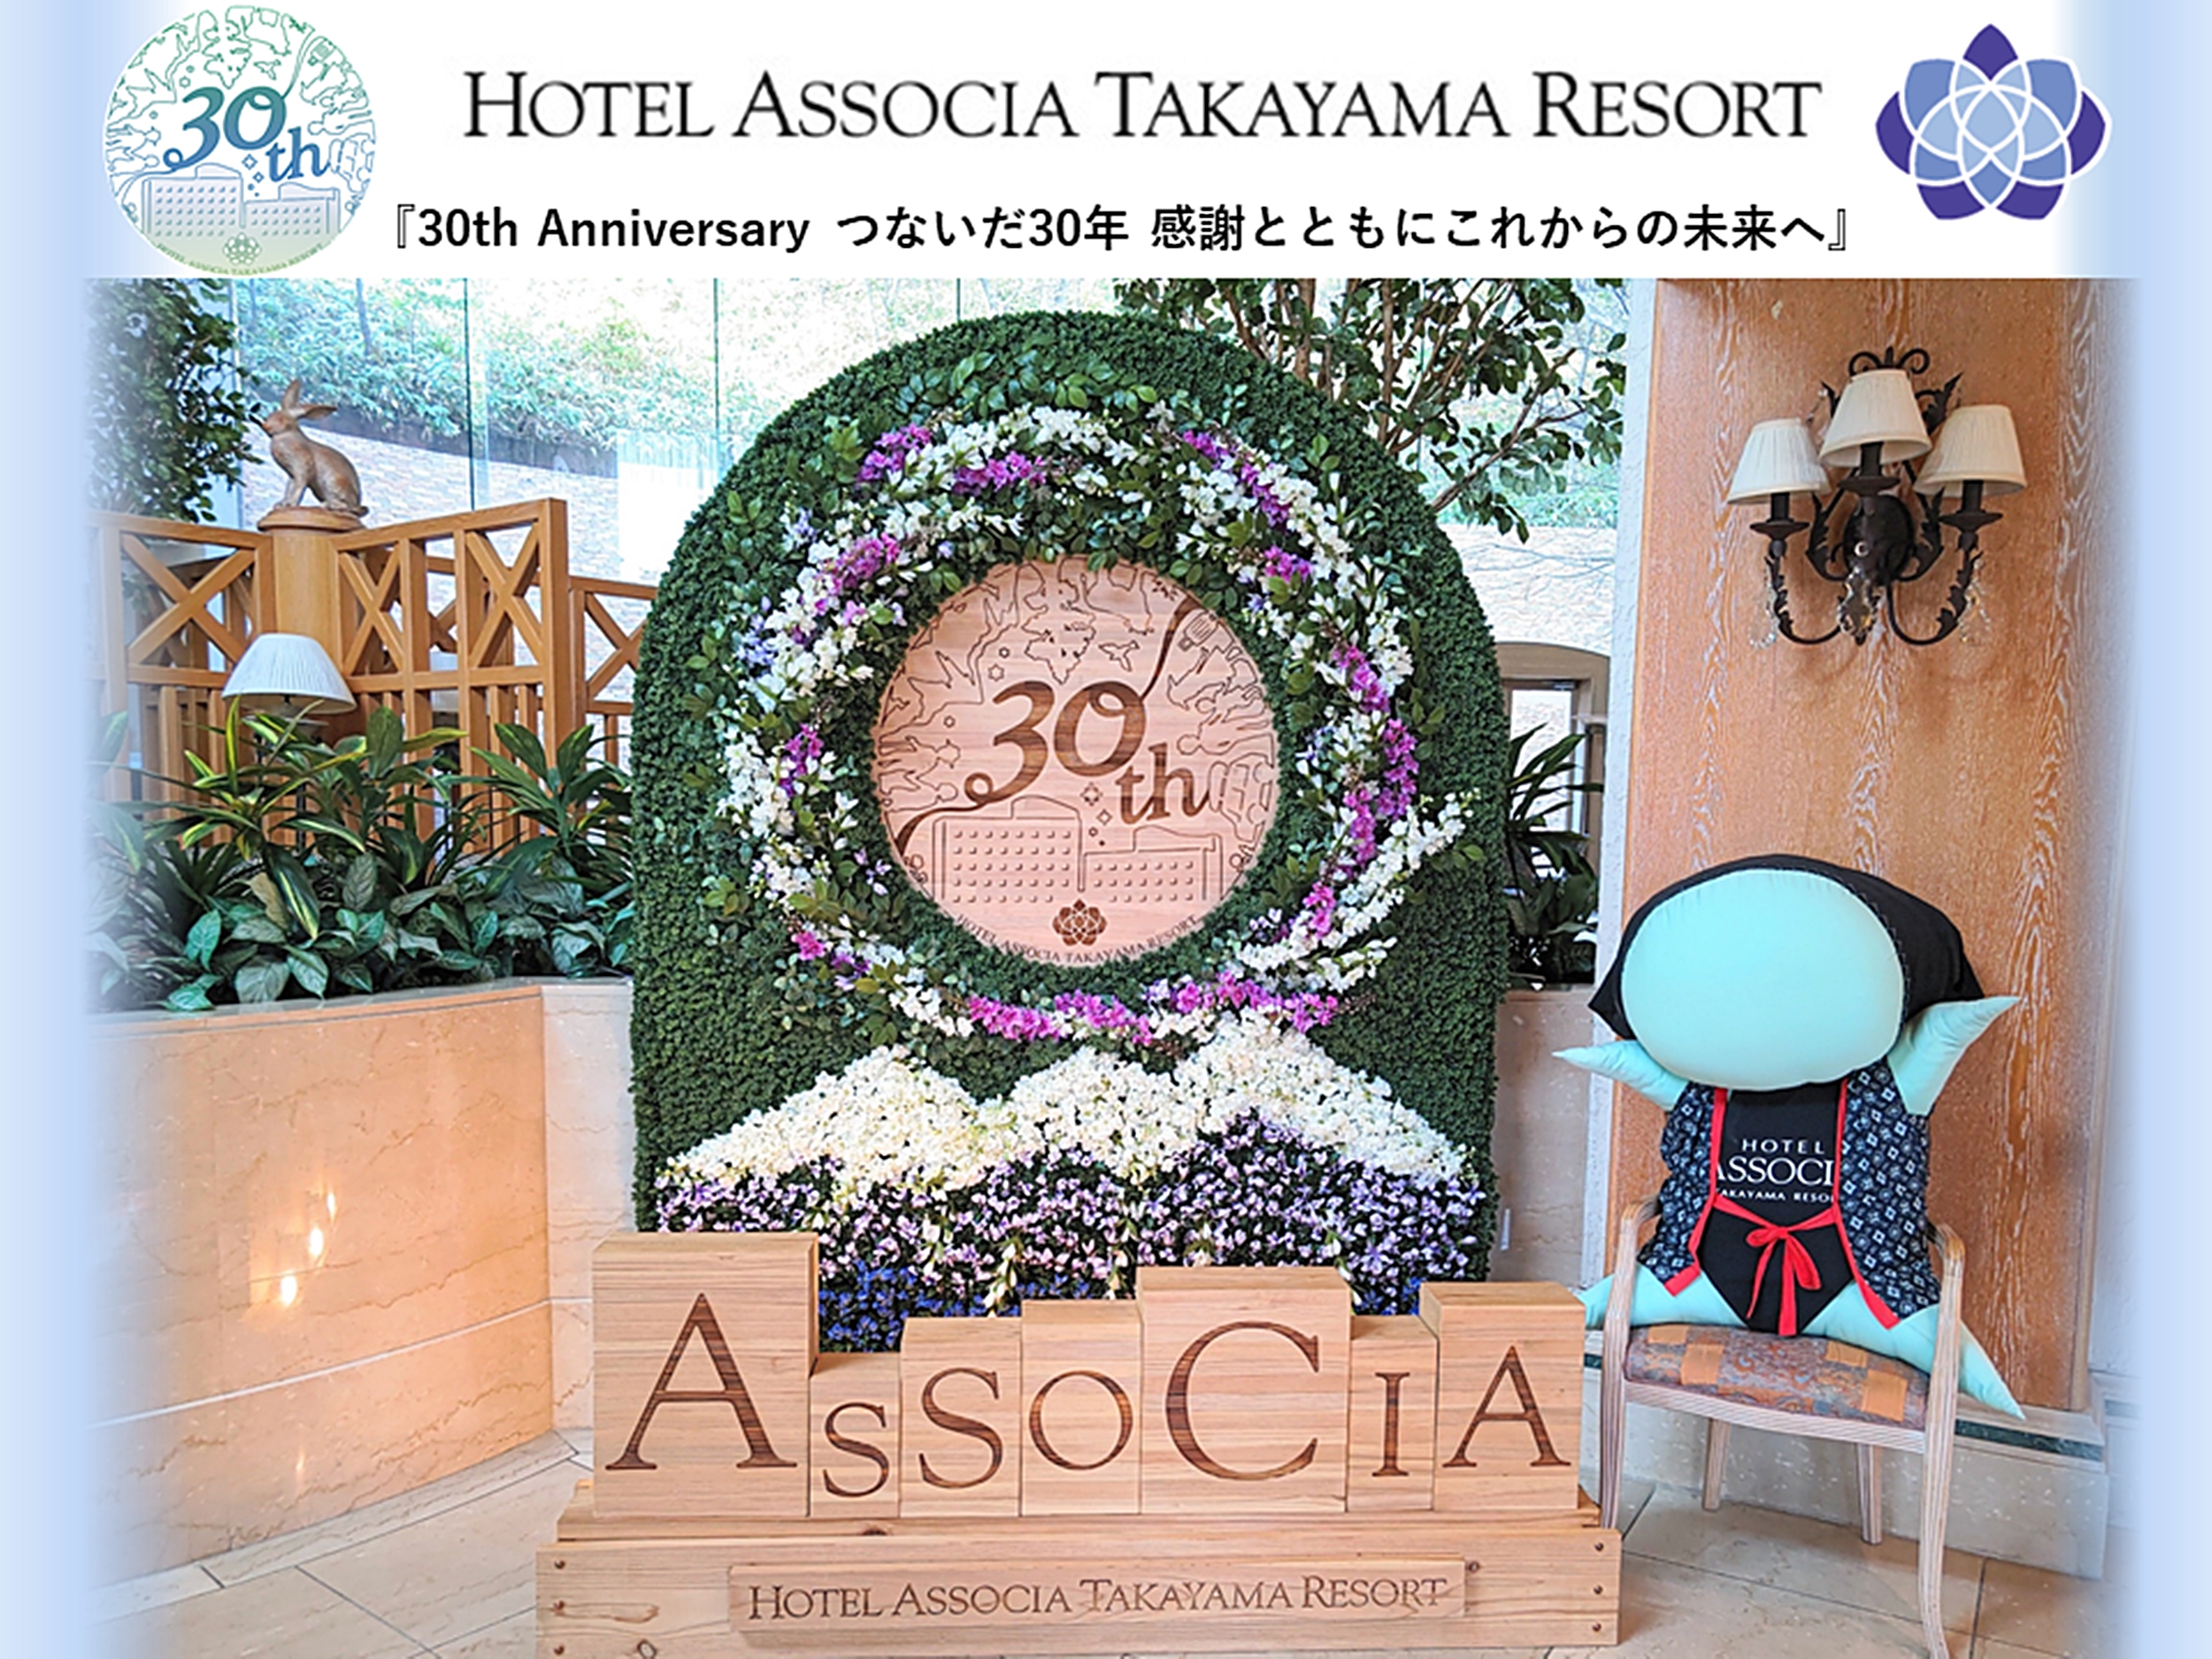 ホテルアソシア高山リゾートは今年開業30周年を迎えます。